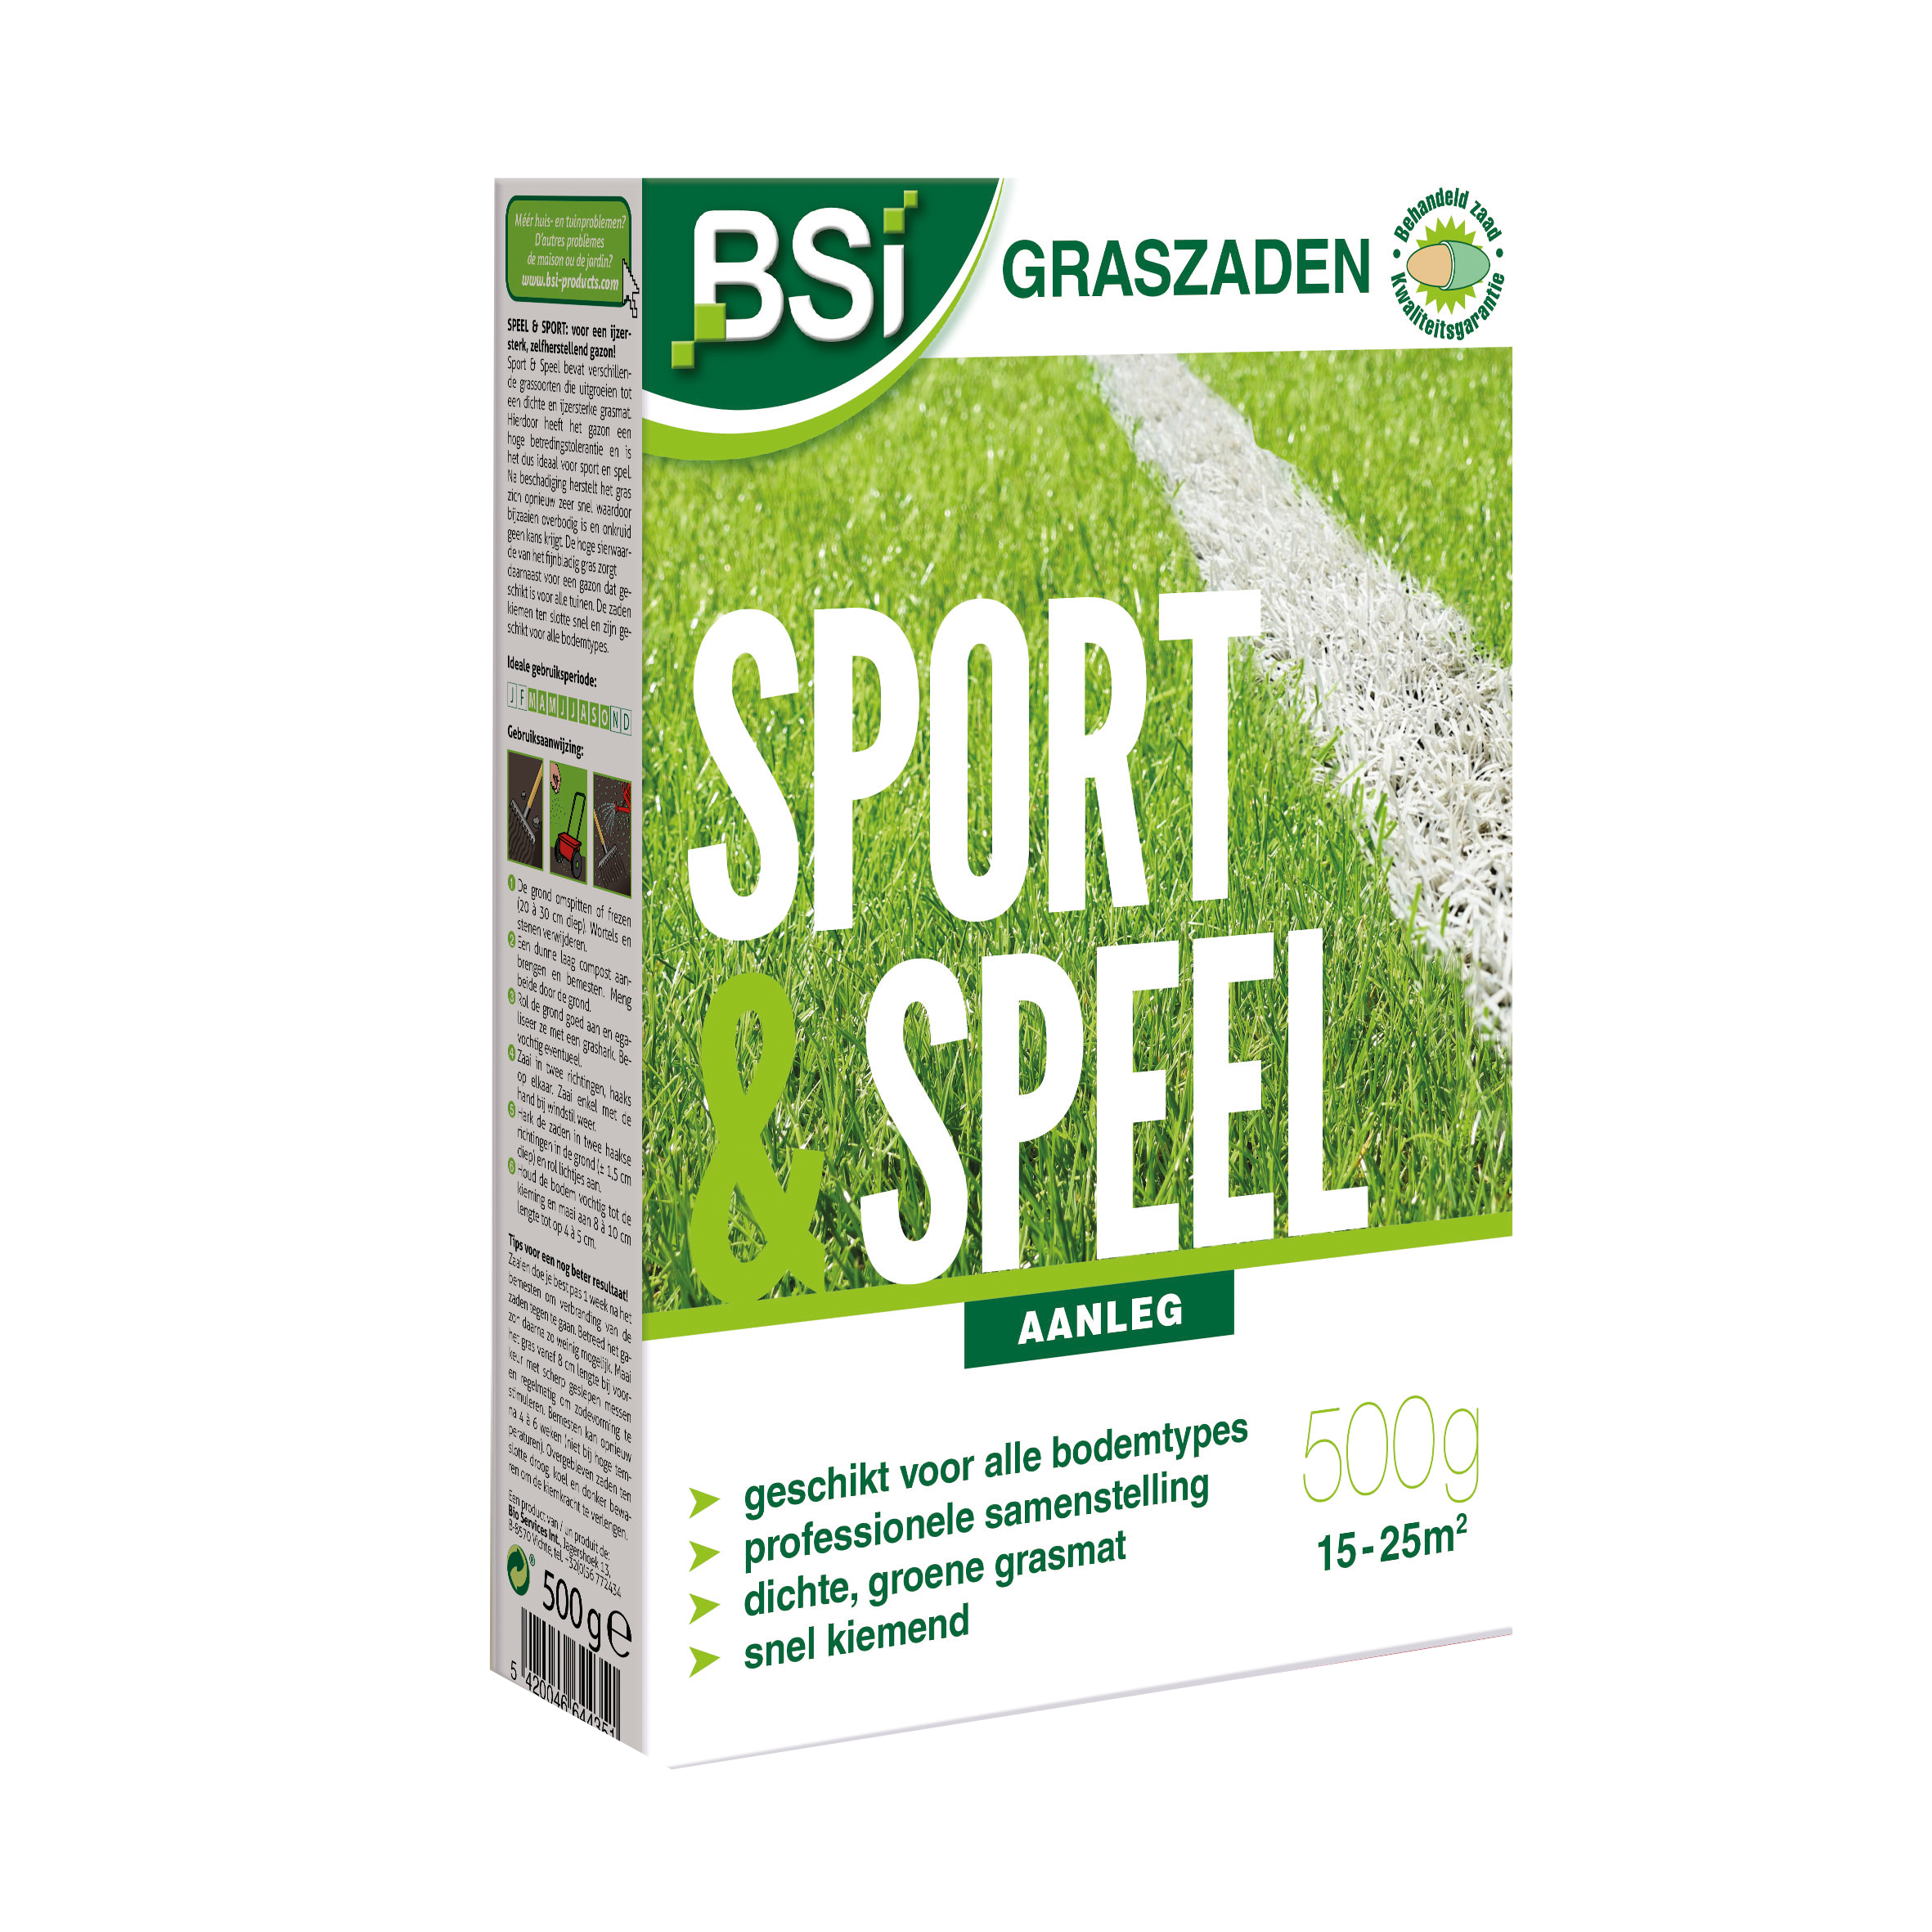 BSI Graszaad Sport en Speel 500 g image